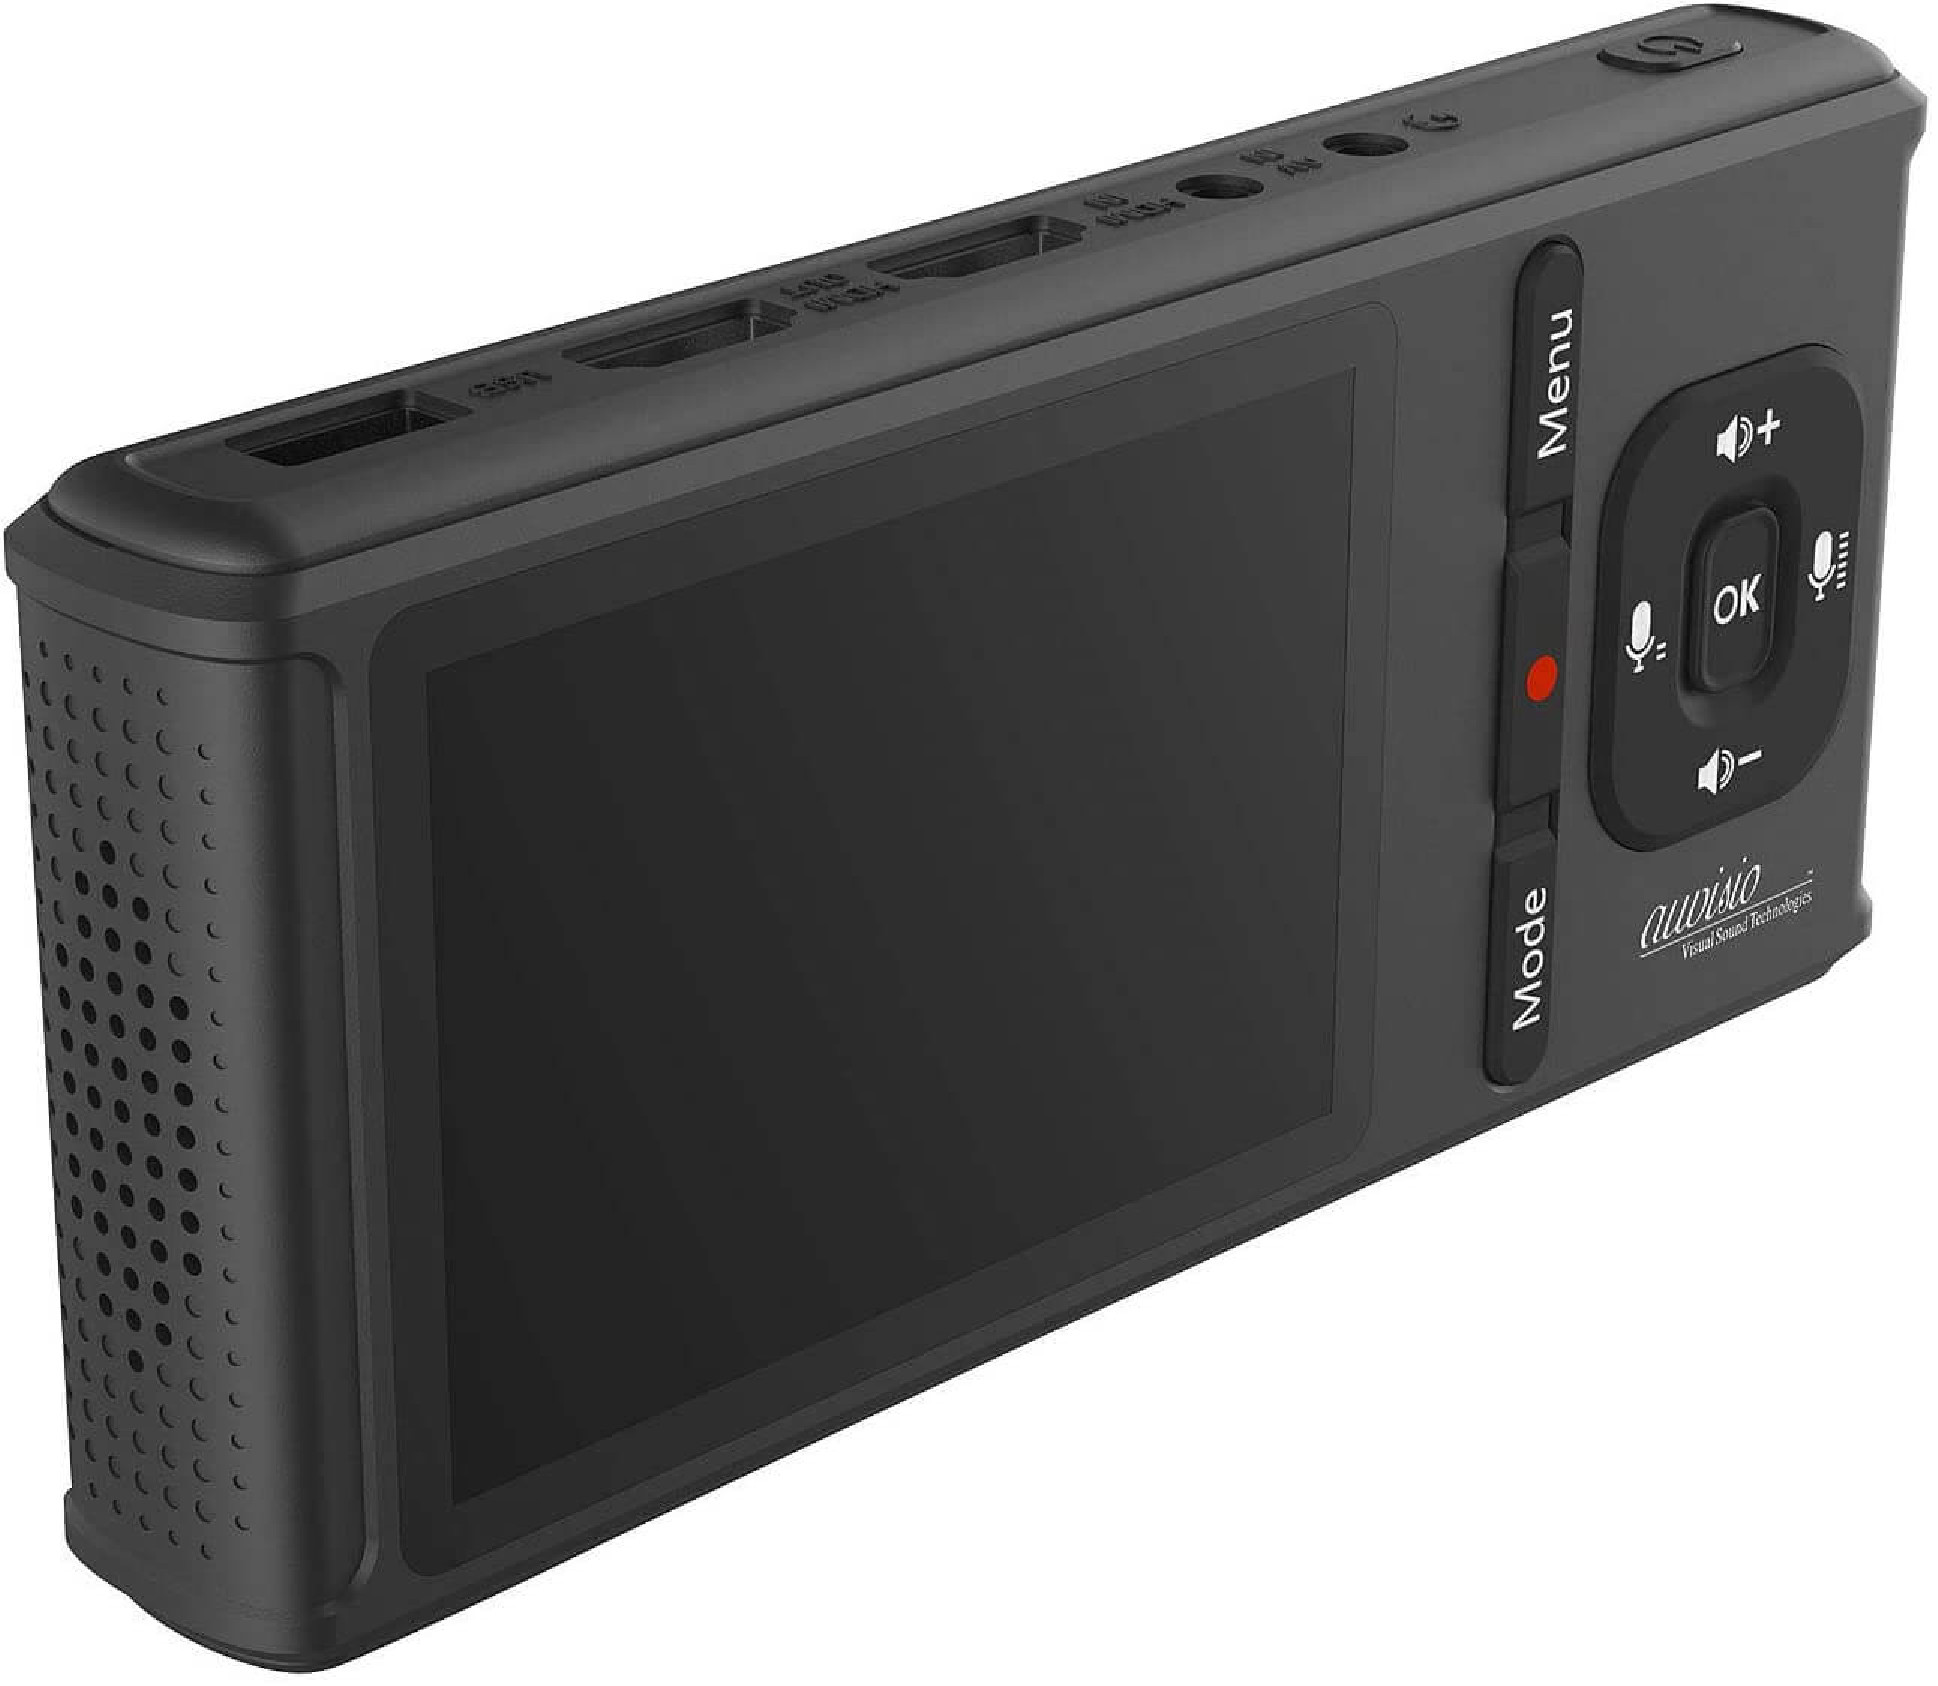 GC-500 AUVISIO Videorecorder, schwarz